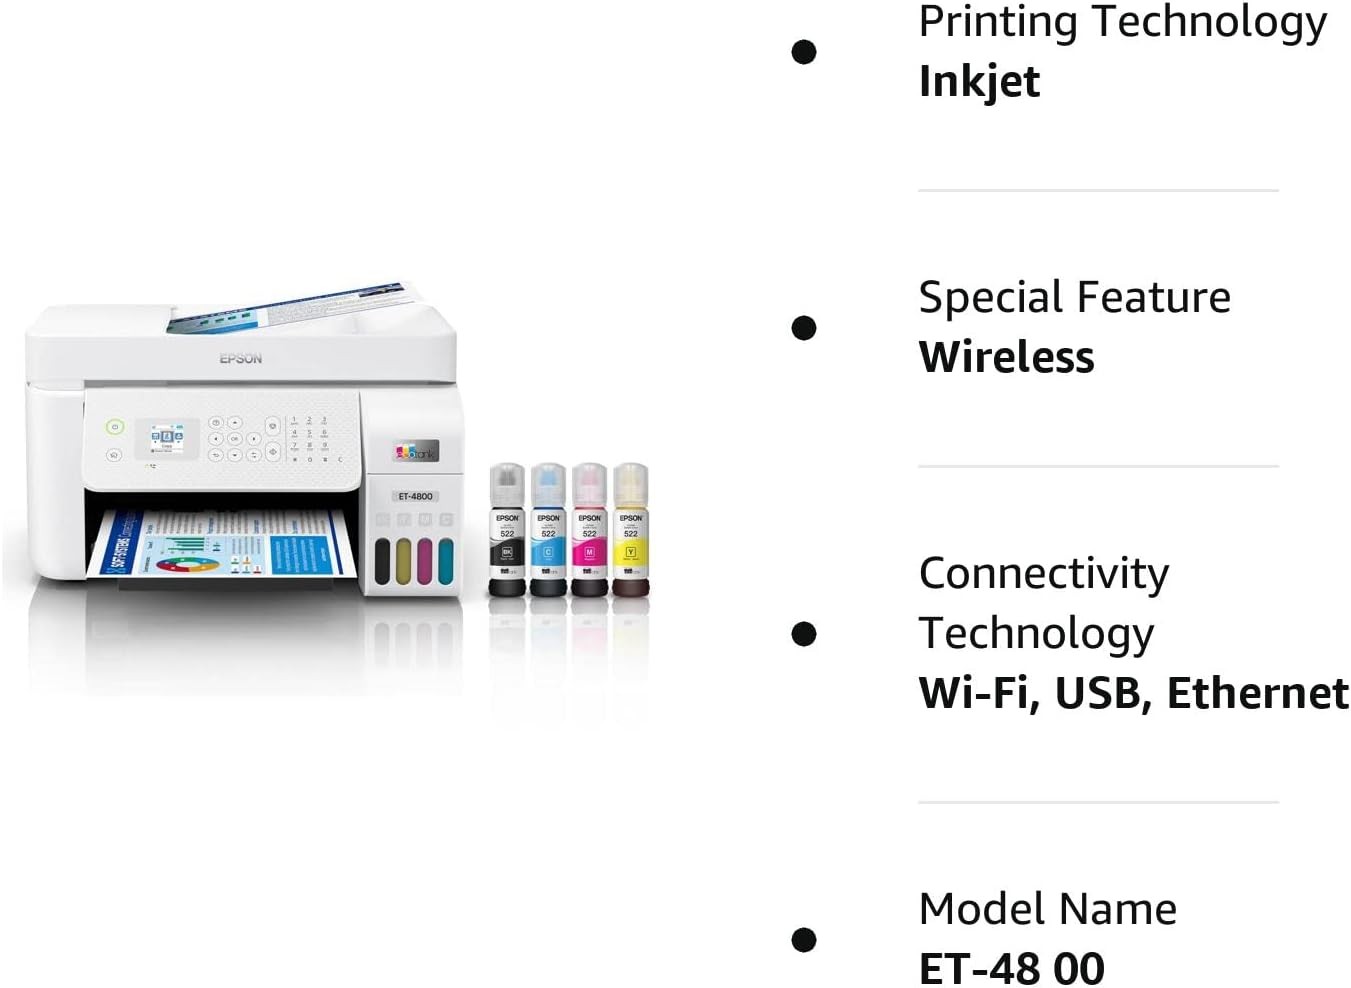 impresoras y scanners - Epson EcoTank ET-4800 Impresora Multifuncional, ADF y Fax, WIFI, USB, Enthernet 0